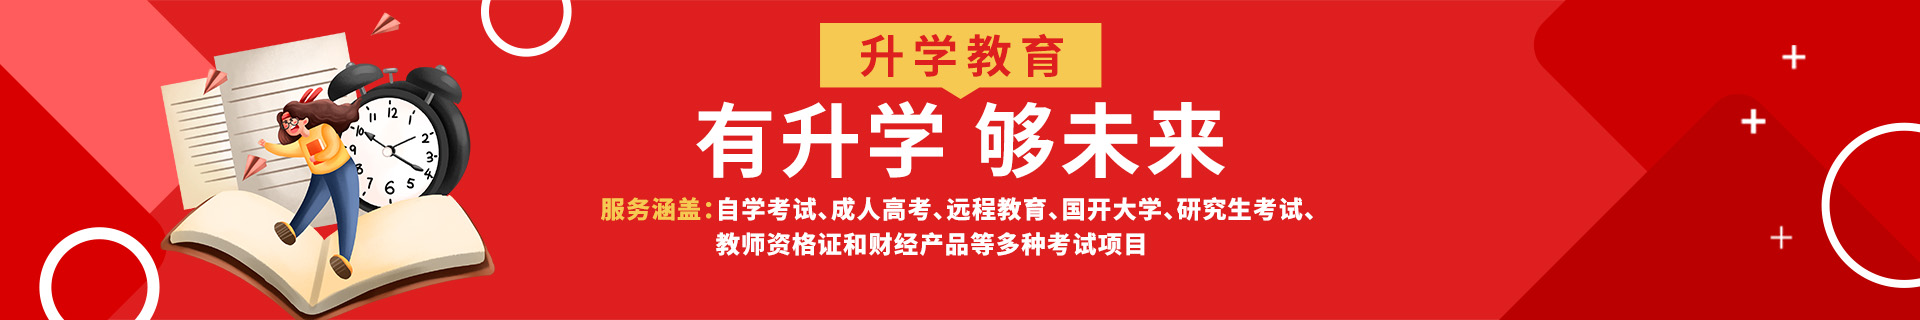 广州海珠升学教育培训机构